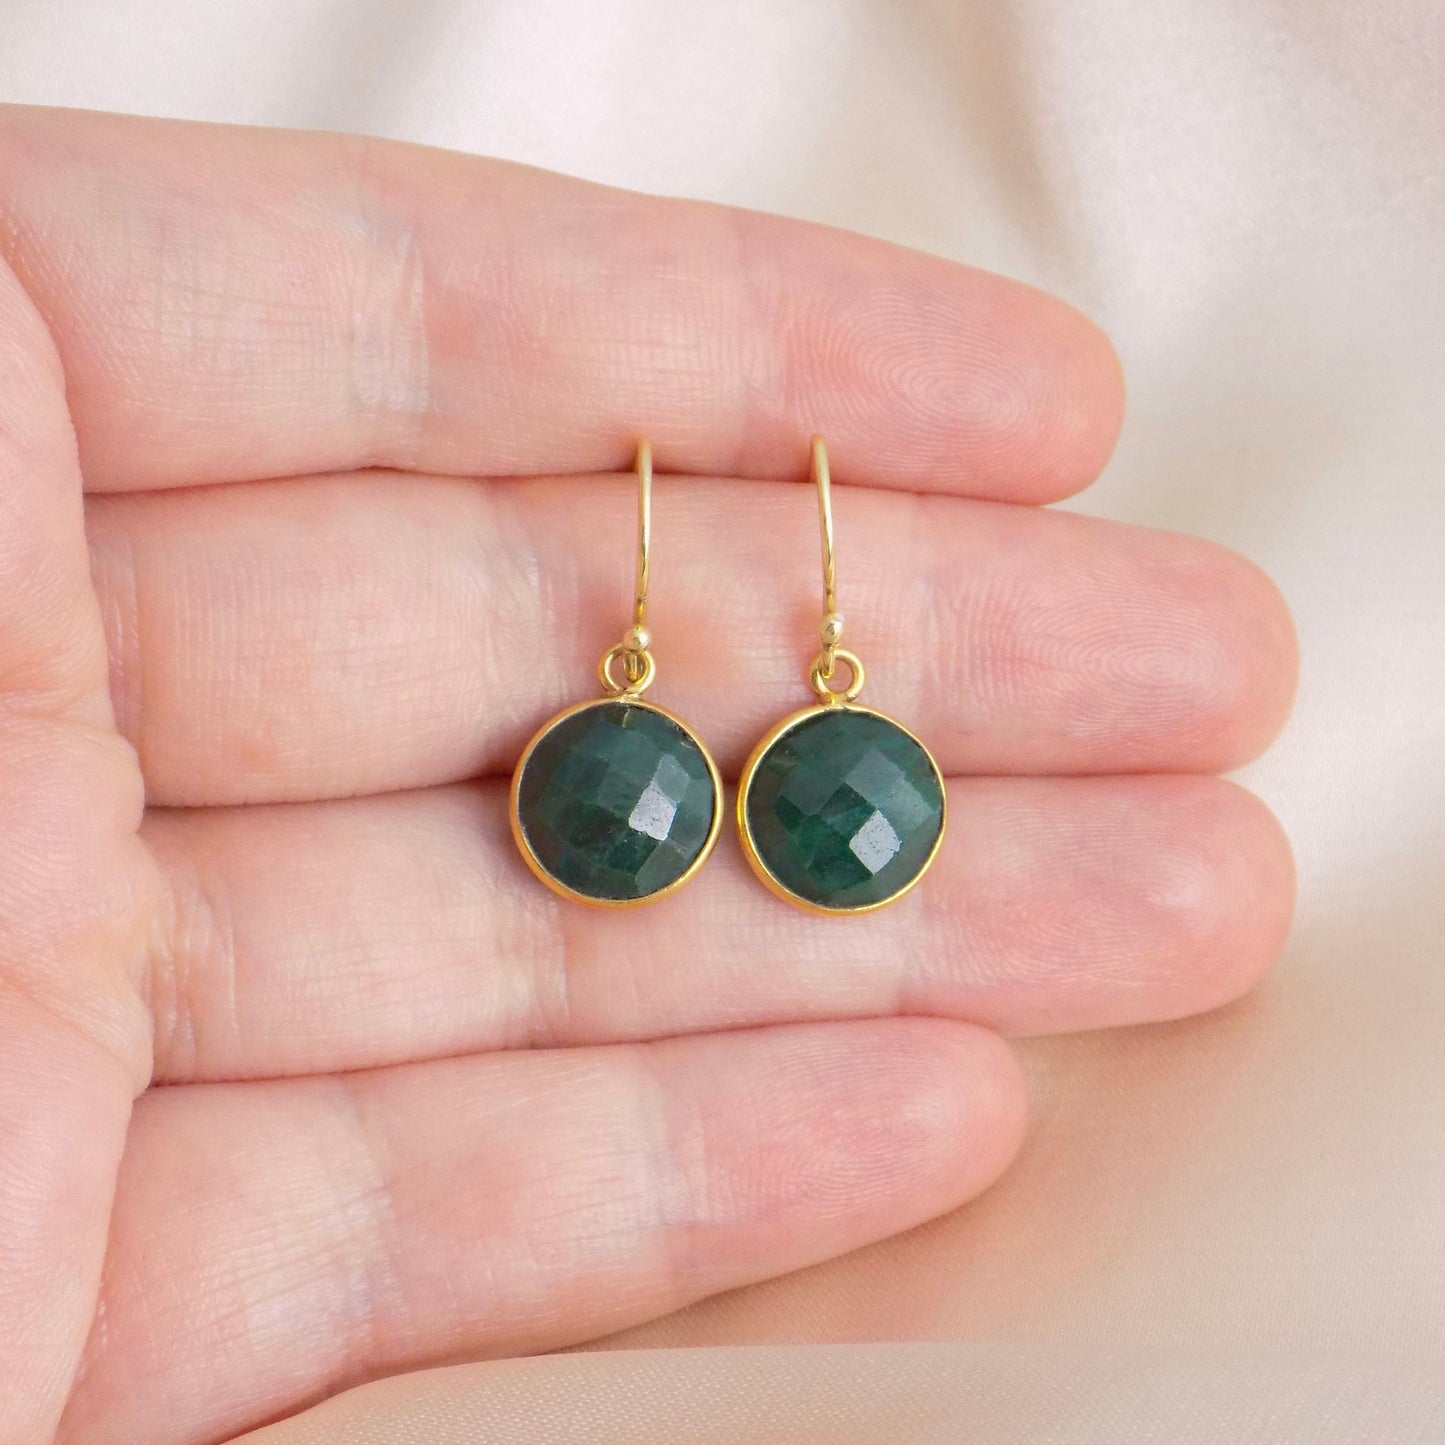 Emerald Earrings Gold, May Birthstone Earrings, Green Stone Earrings Round, Teacher Gift Women, M6-151